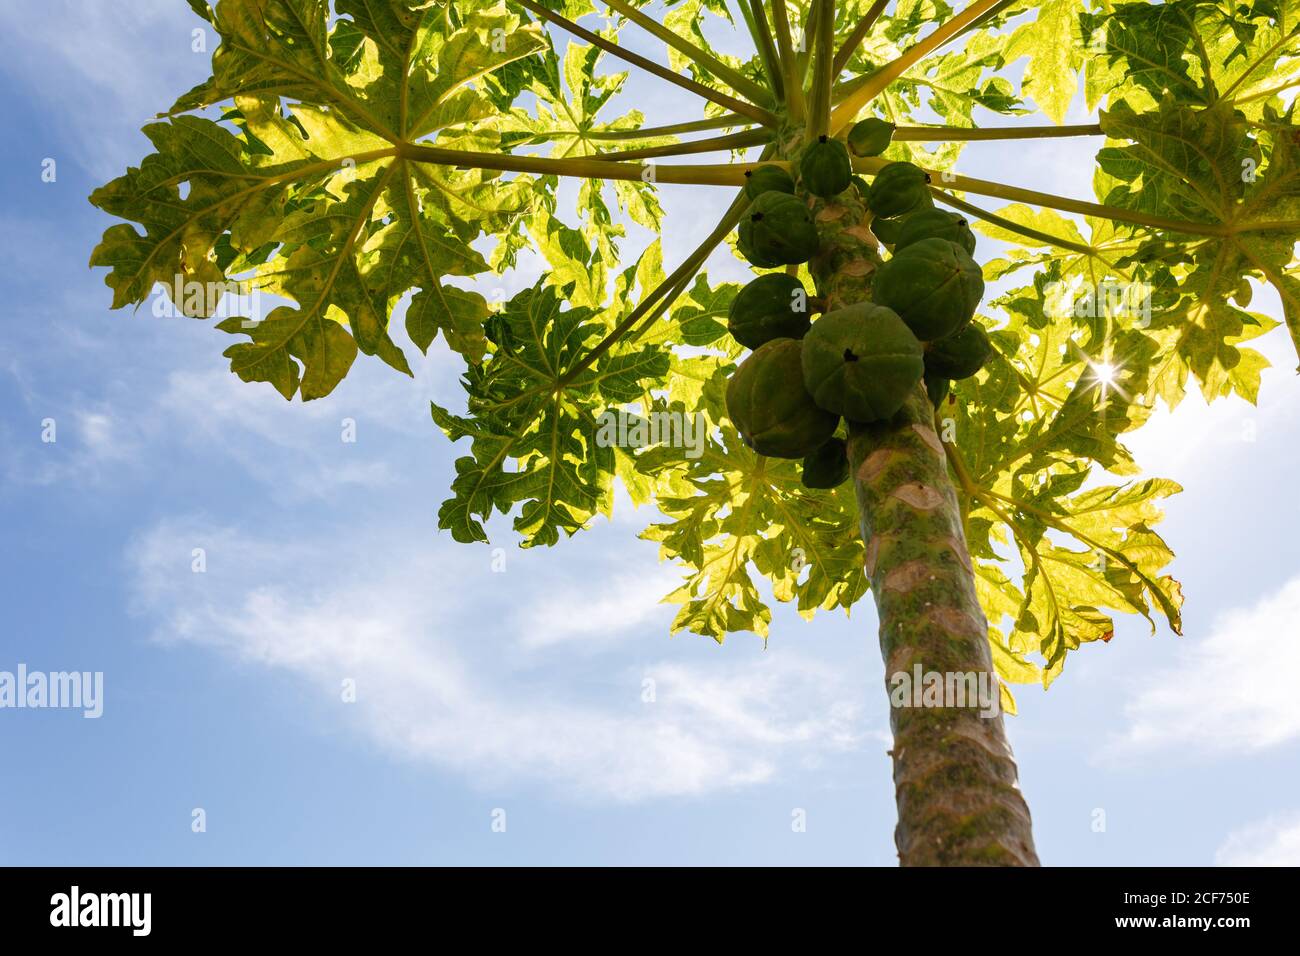 Le soleil se filtre à travers les feuilles vertes d'un petit bio papaye avec un bouquet de fruits non mûrs Banque D'Images